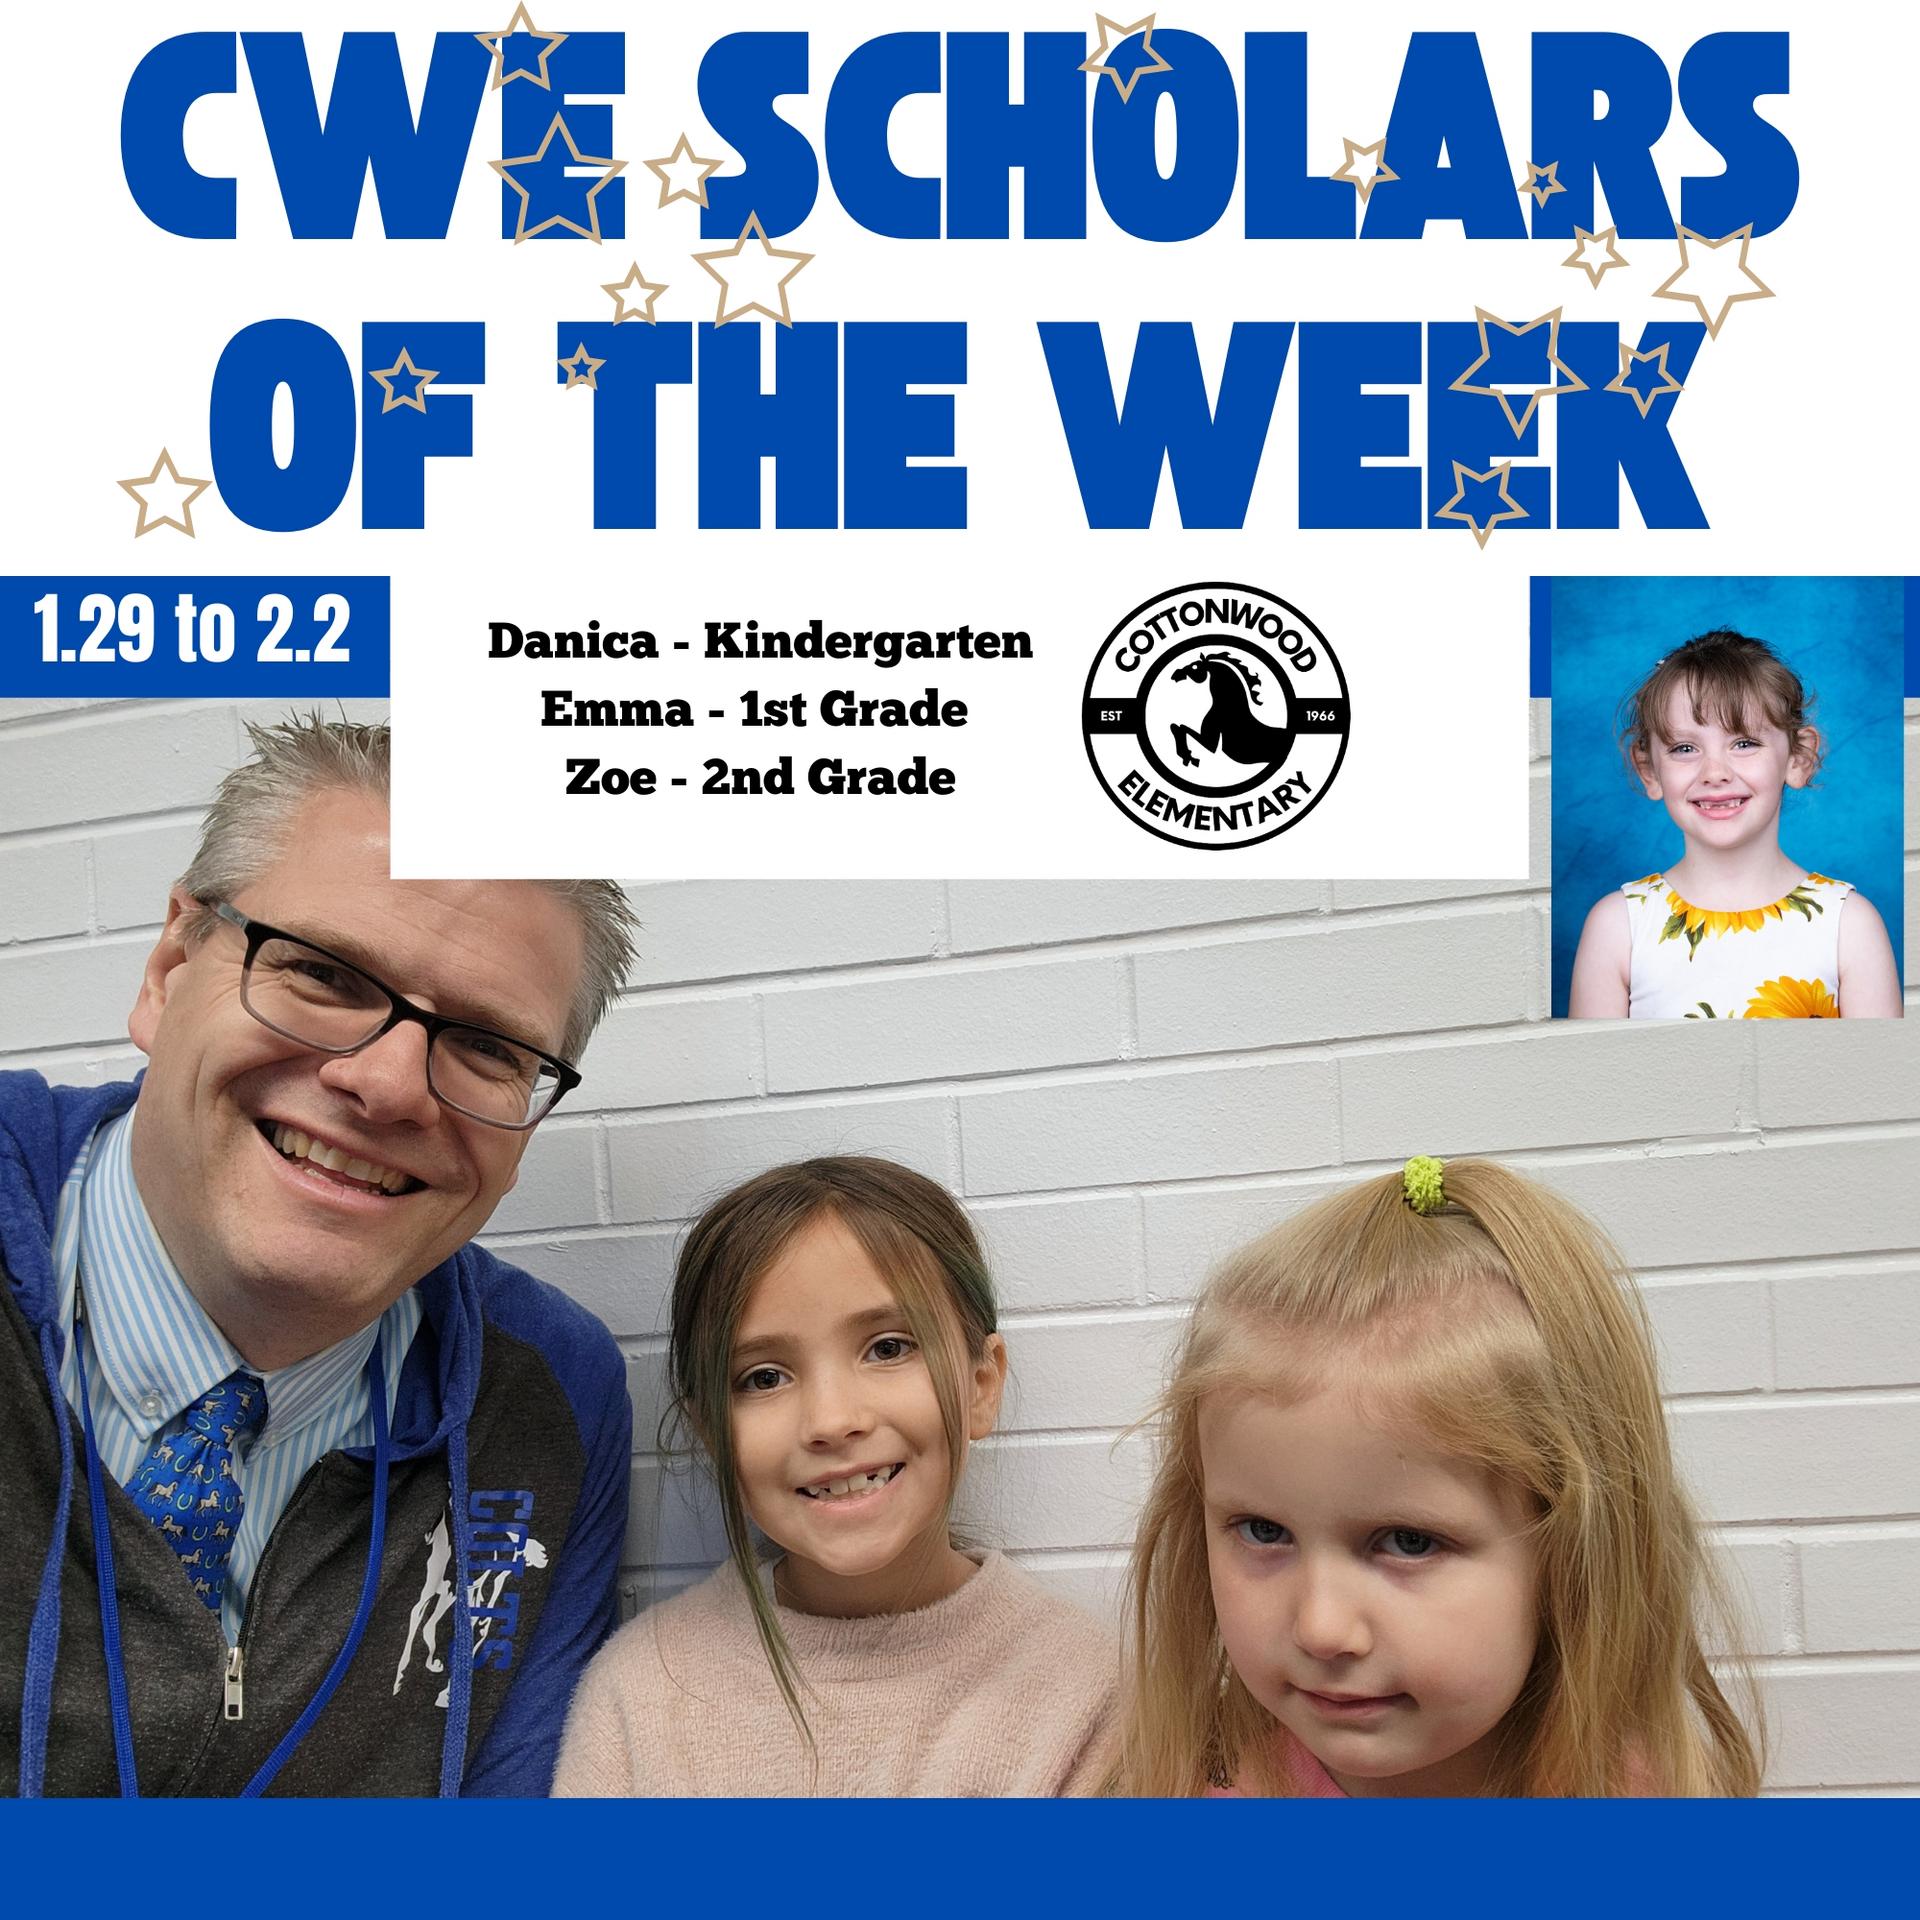 CWE-Scholars-of-the-Week-1.29-to-2.2.jpg